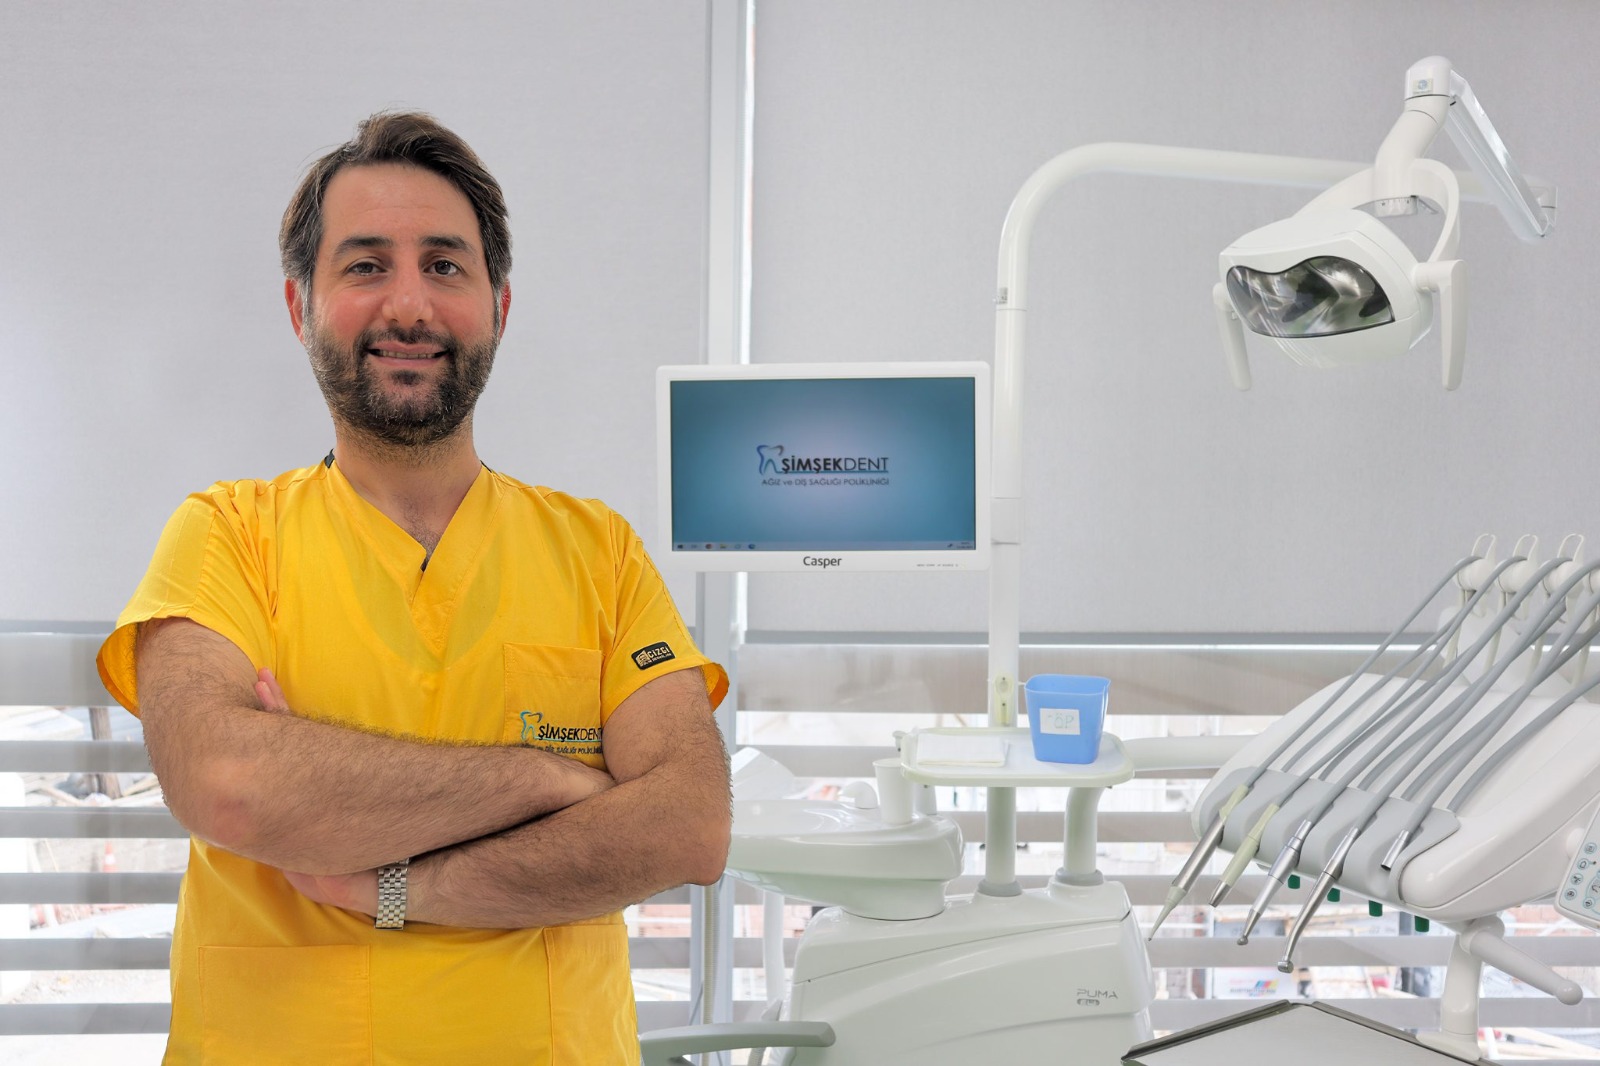 Eğitim: Tokat Gaziosmanpaşa Üniversitesi Diş Hekimliği Fakültesi